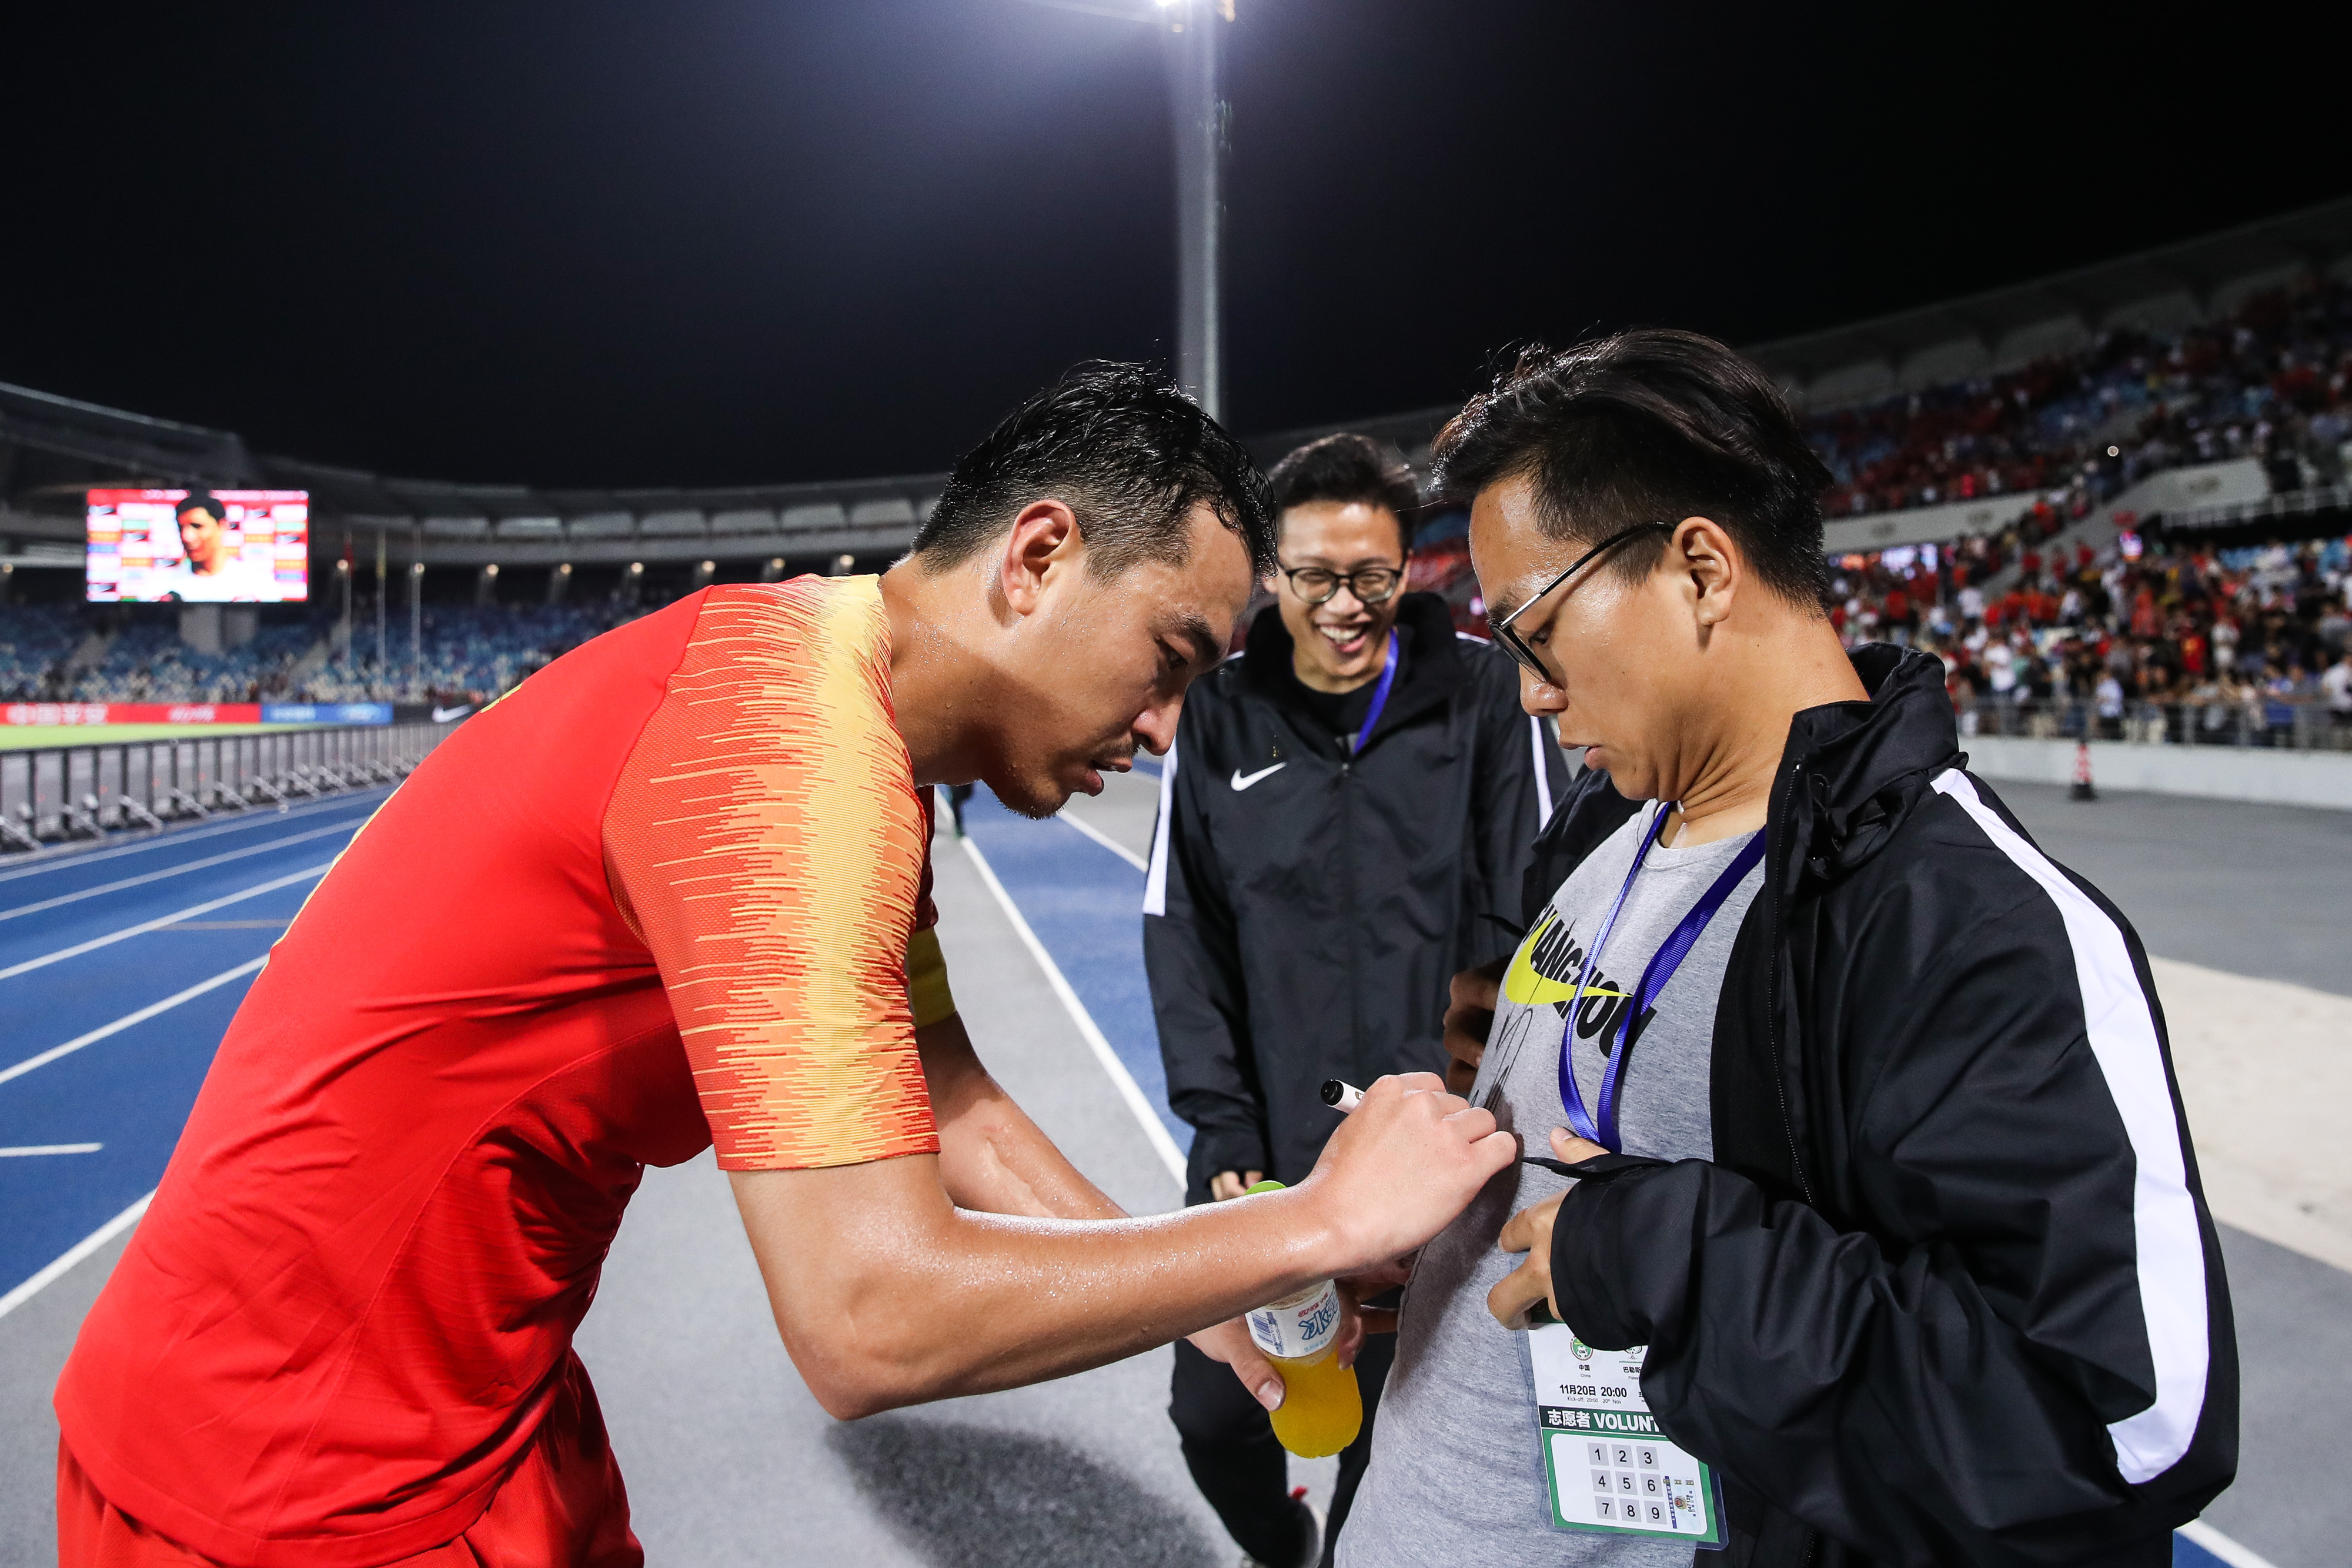 冯潇霆为球迷签名。